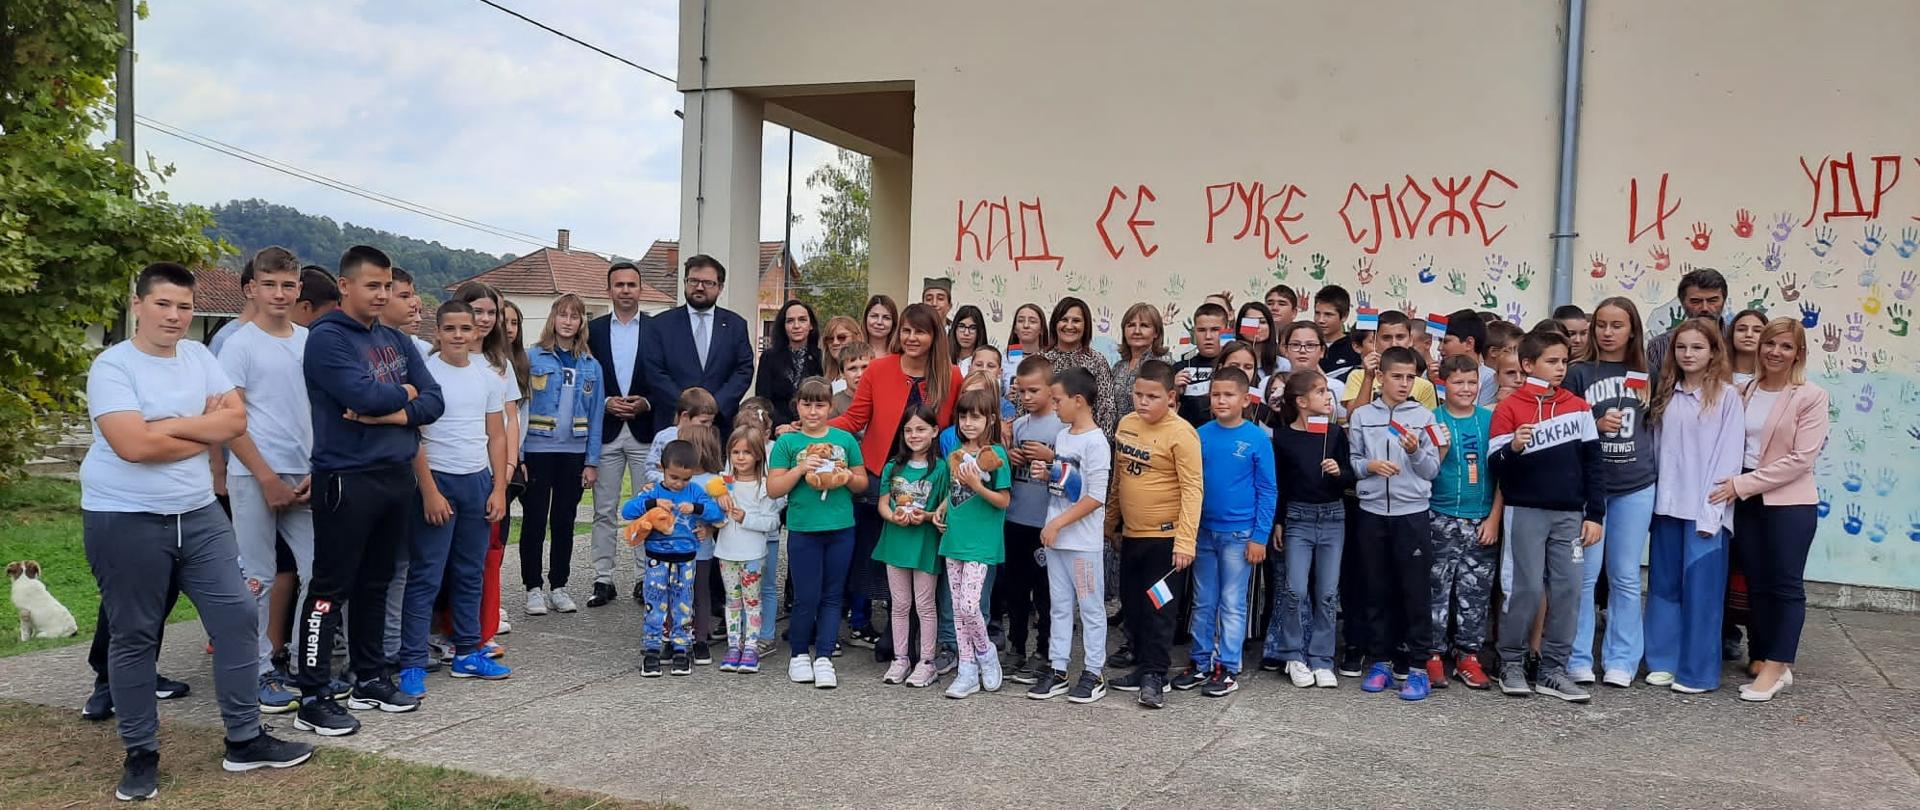 10.10 br. w miejscowości Gorna Toplica przedstawiciele placówki podpisali protokół odbioru przedmiotu umowy na realizację projektu polskiej pomocy rozwojowej w Szkole Podstawowej Milan Rakić. 